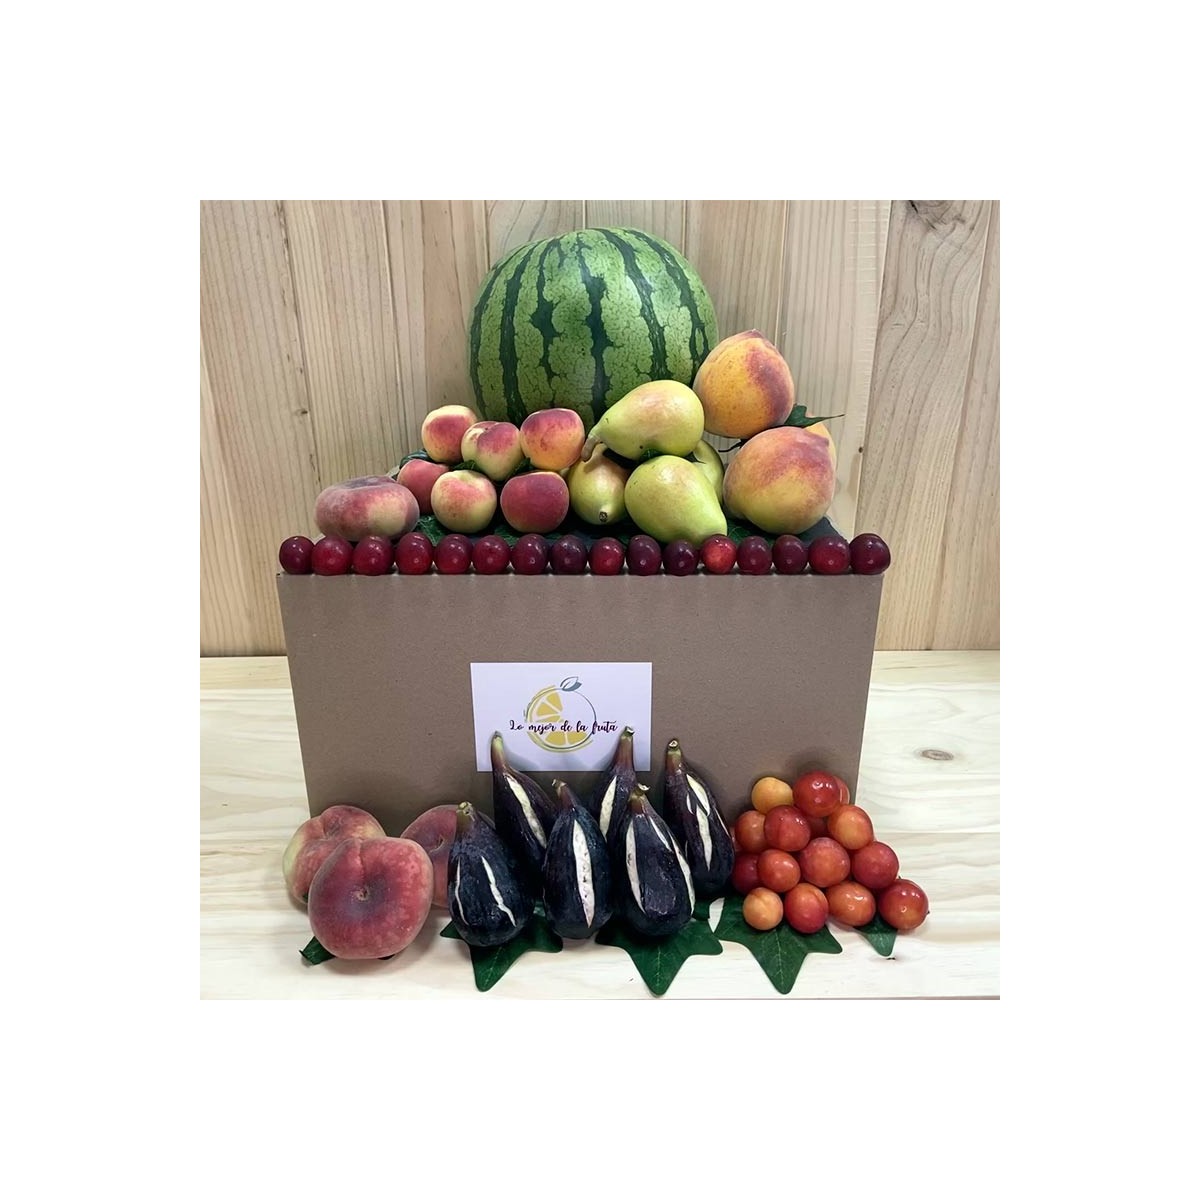 Pack Frutas De Junio - Packs Frutas y Verduras -1- Lo mejor de la fruta